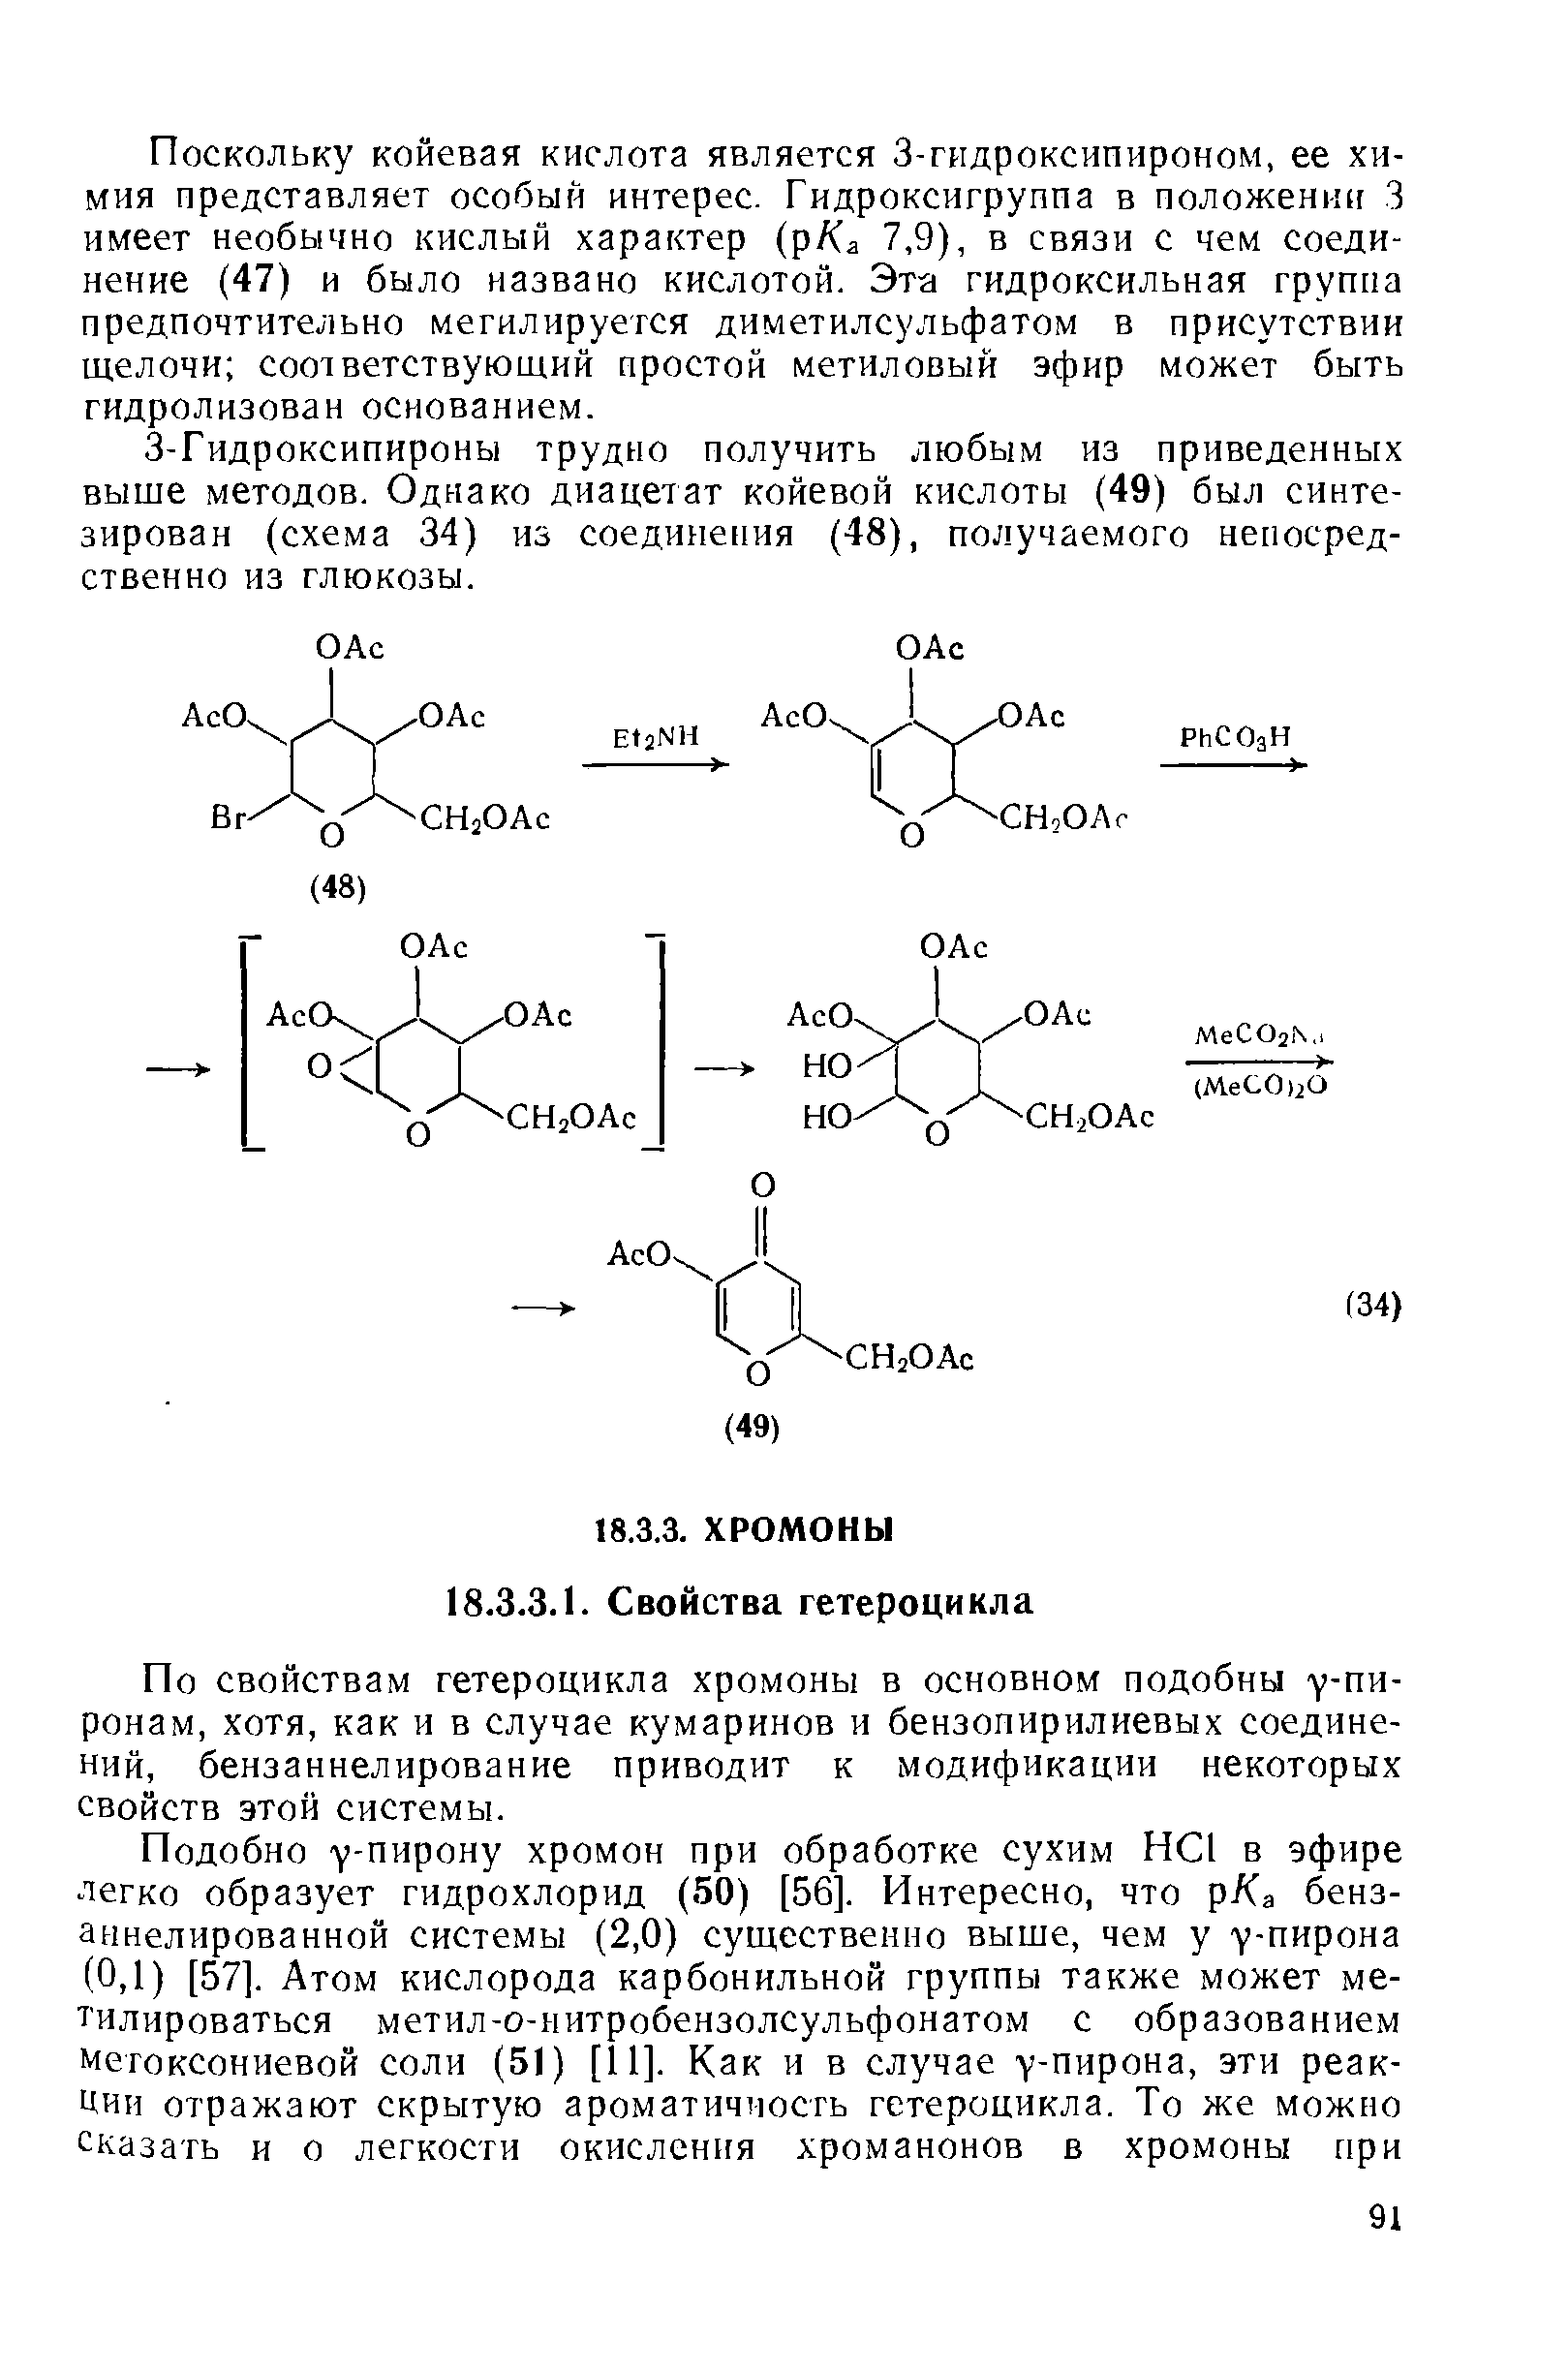 По свойствам гетероцикла хромоны в основном подобны у-пи-ронам, хотя, как и в случае кумаринов и бензопирилиевых соединений, бензаннелирование приводит к модификации некоторых свойств этой системы.